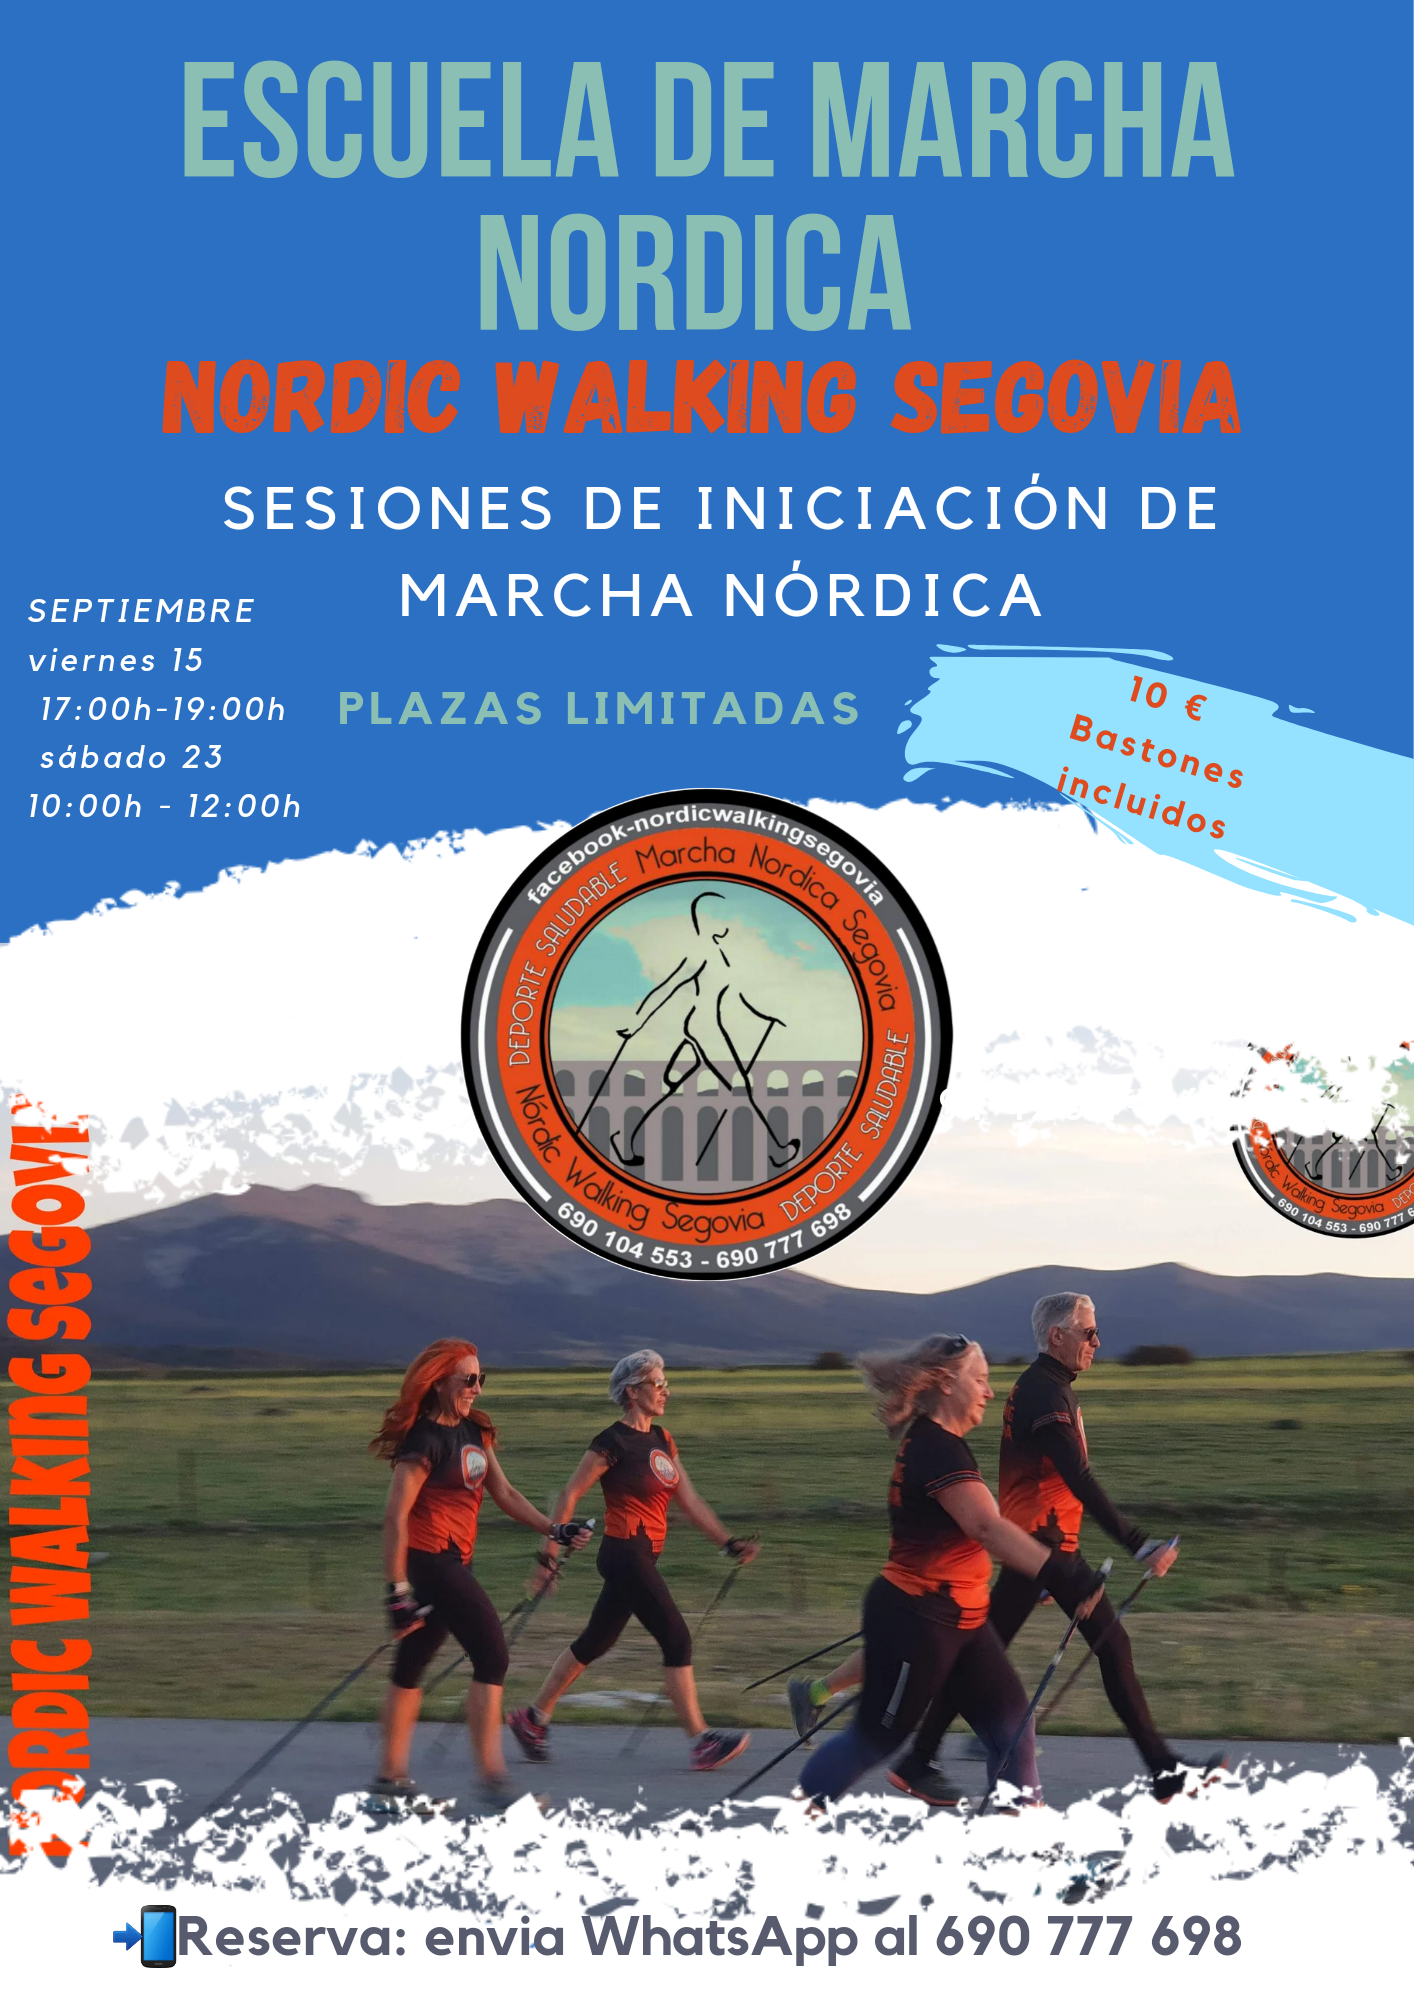 C.D. Nordik Walking Segovia: Sesiones de Iniciación